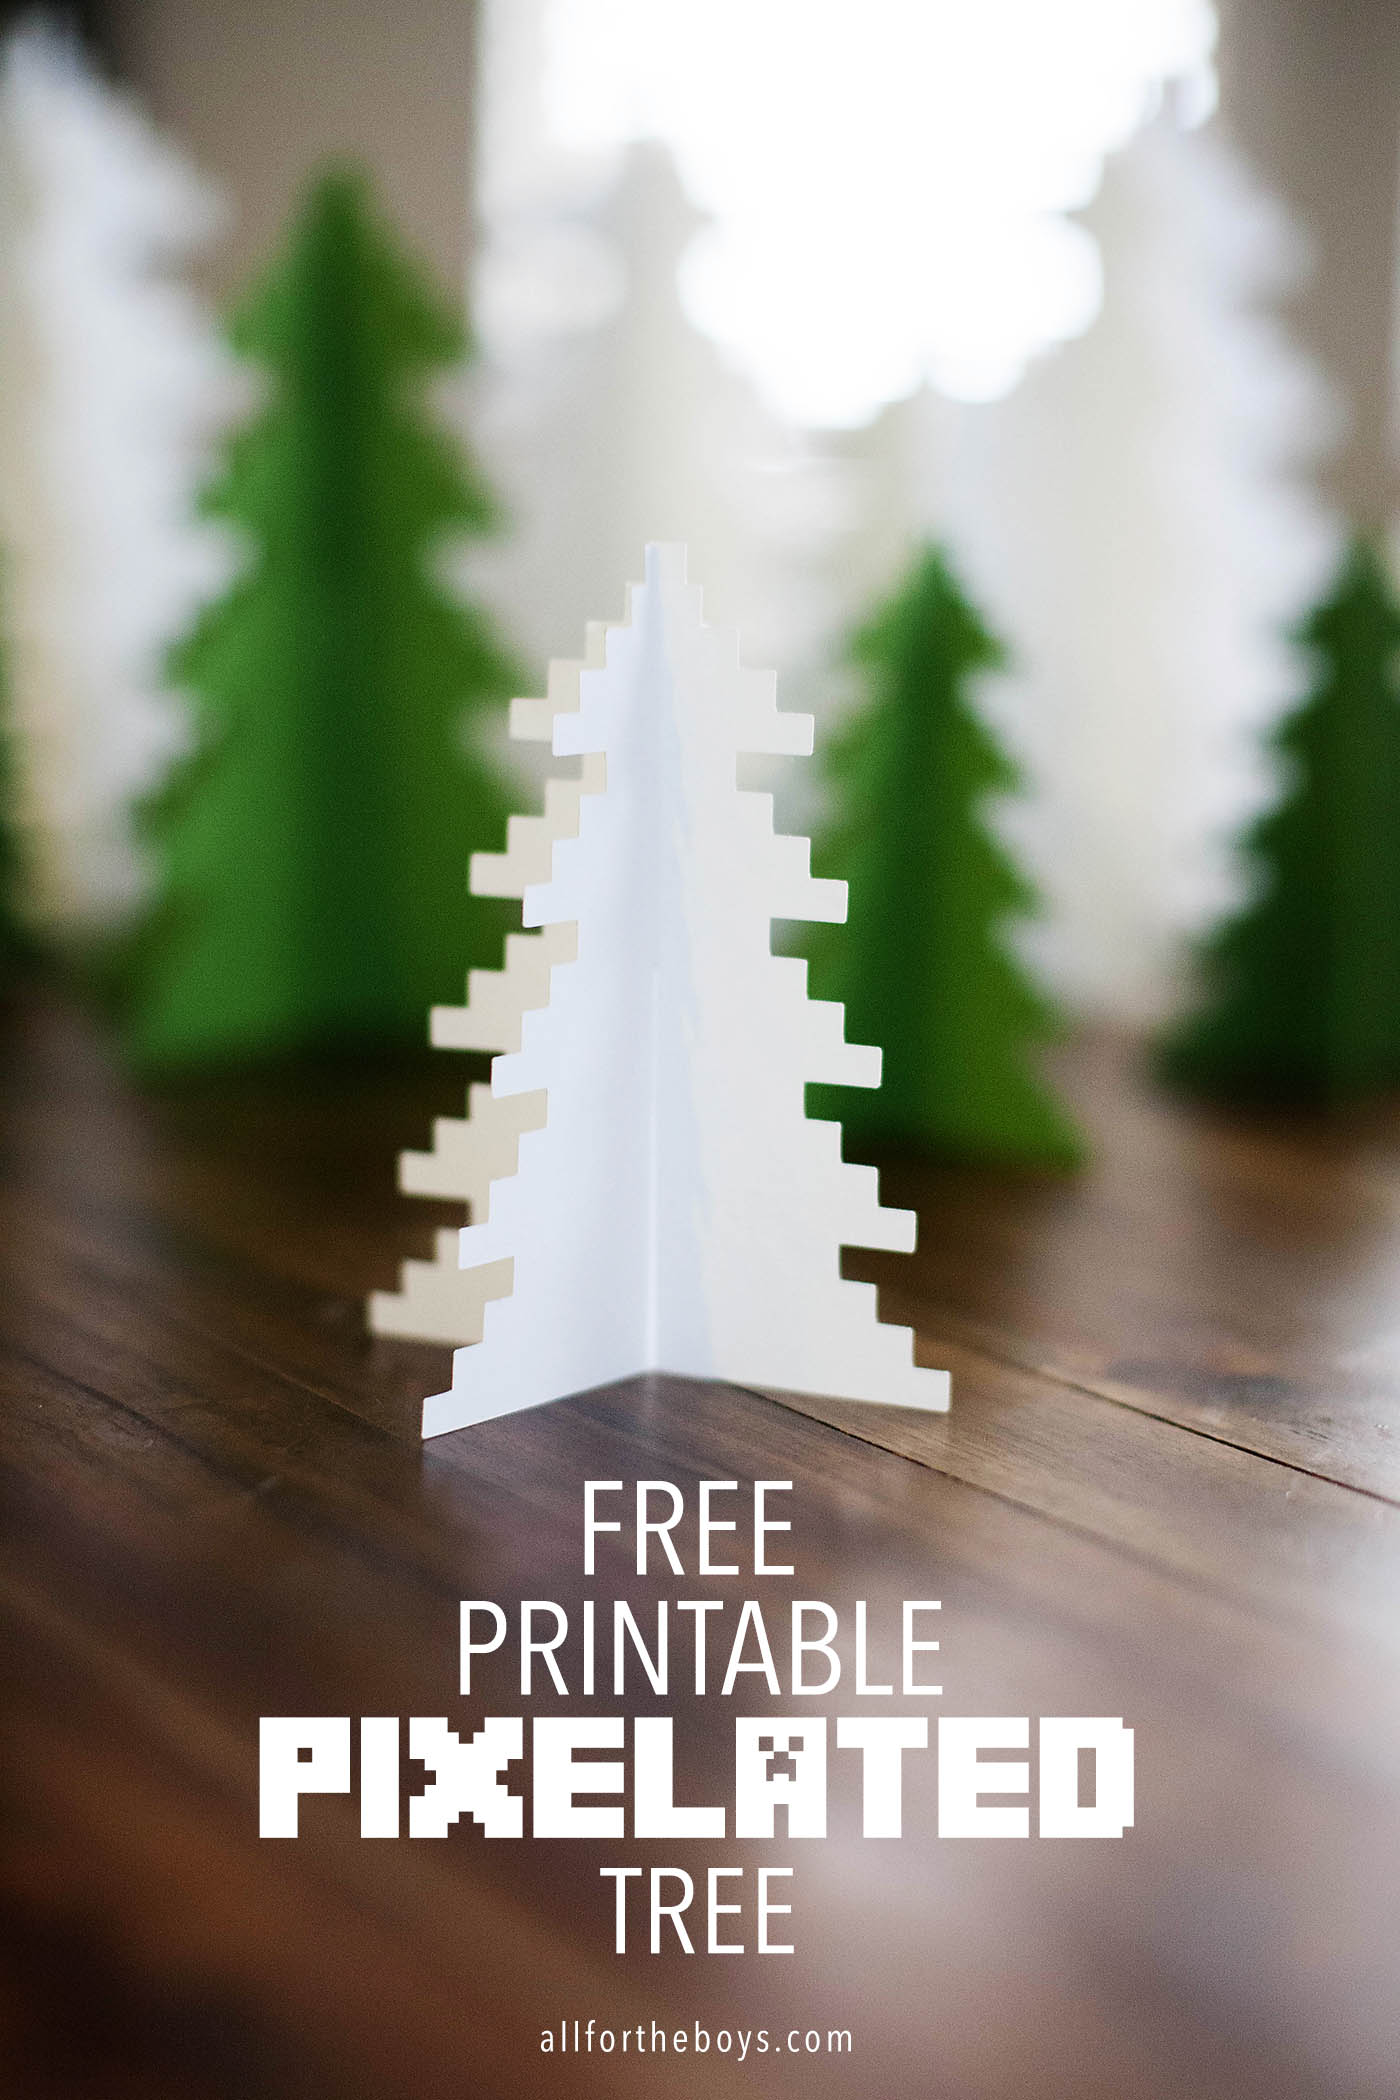 Printable pixelated tree